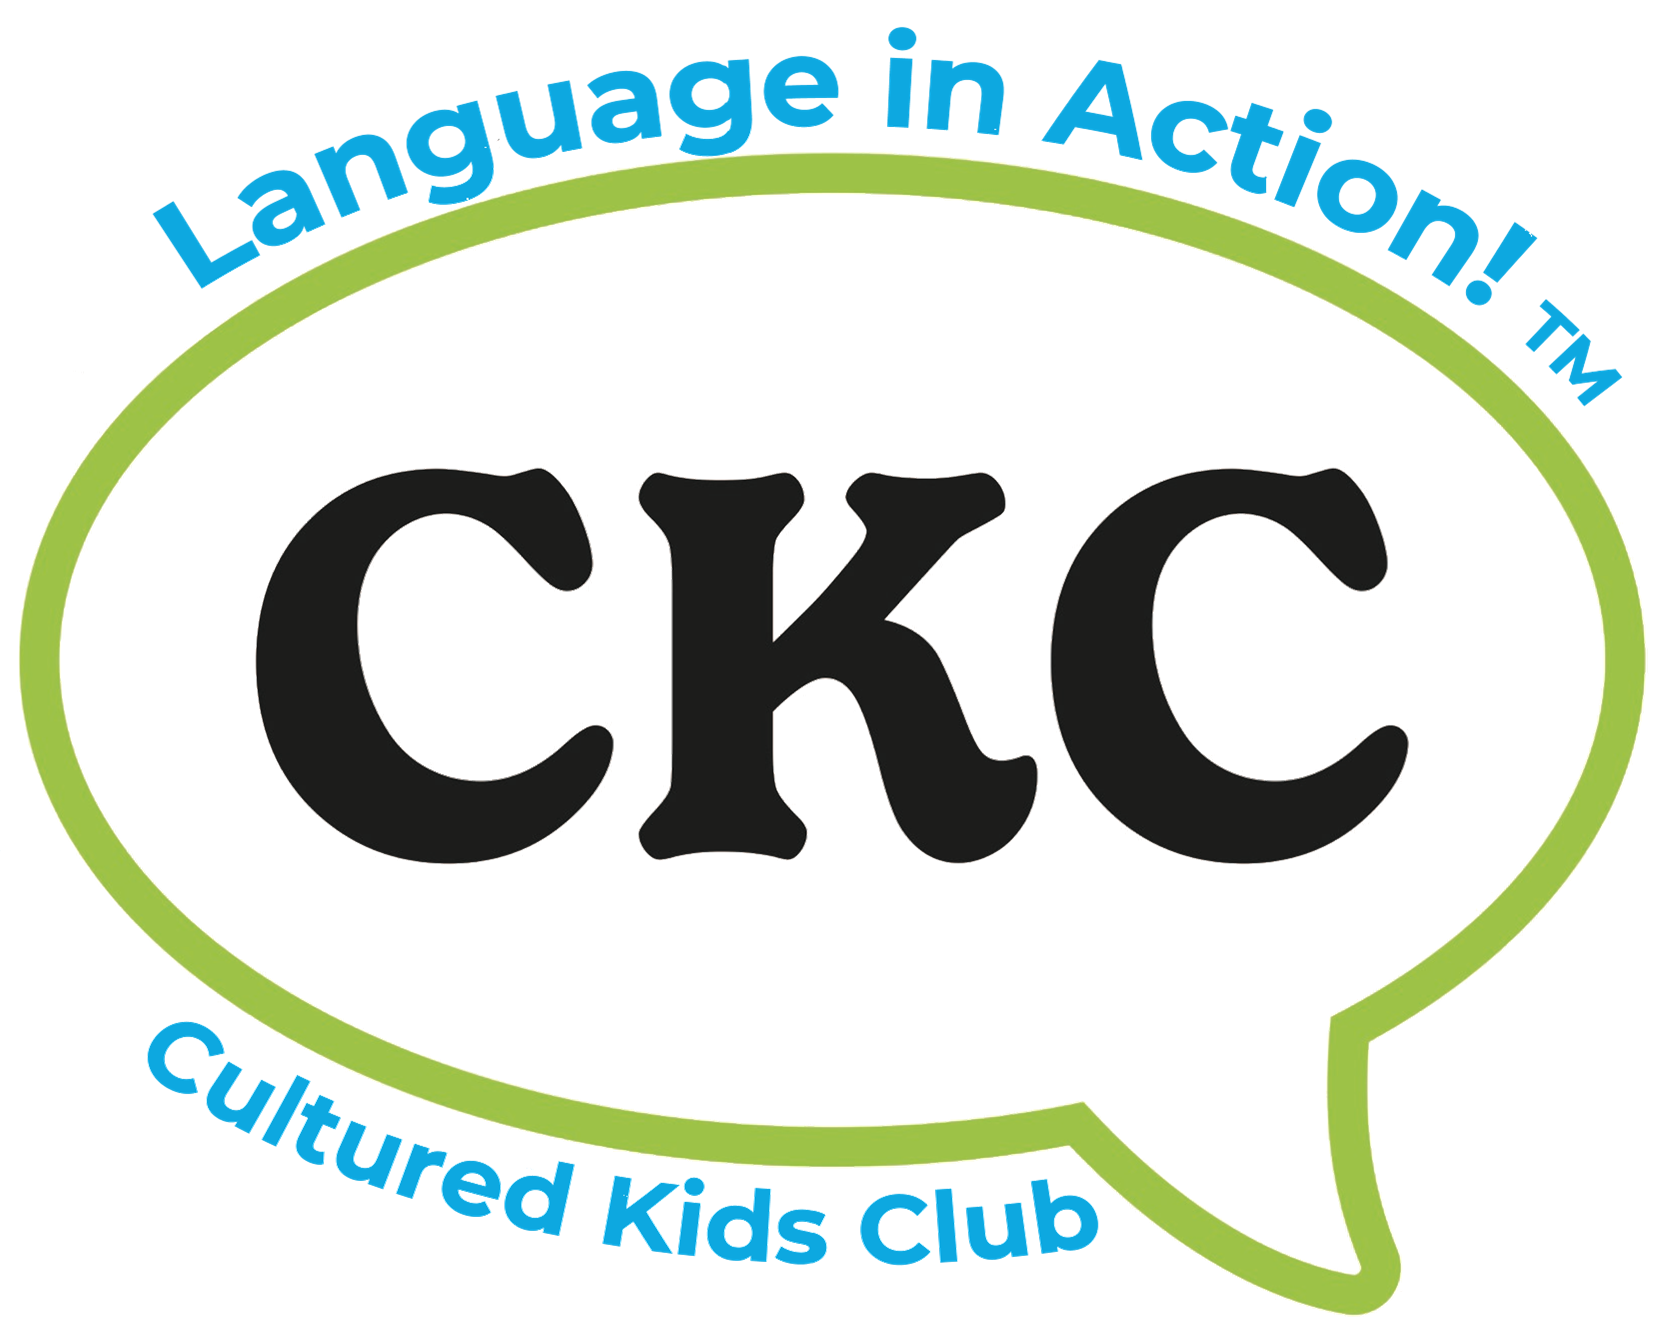 Cultured Kids Club logo